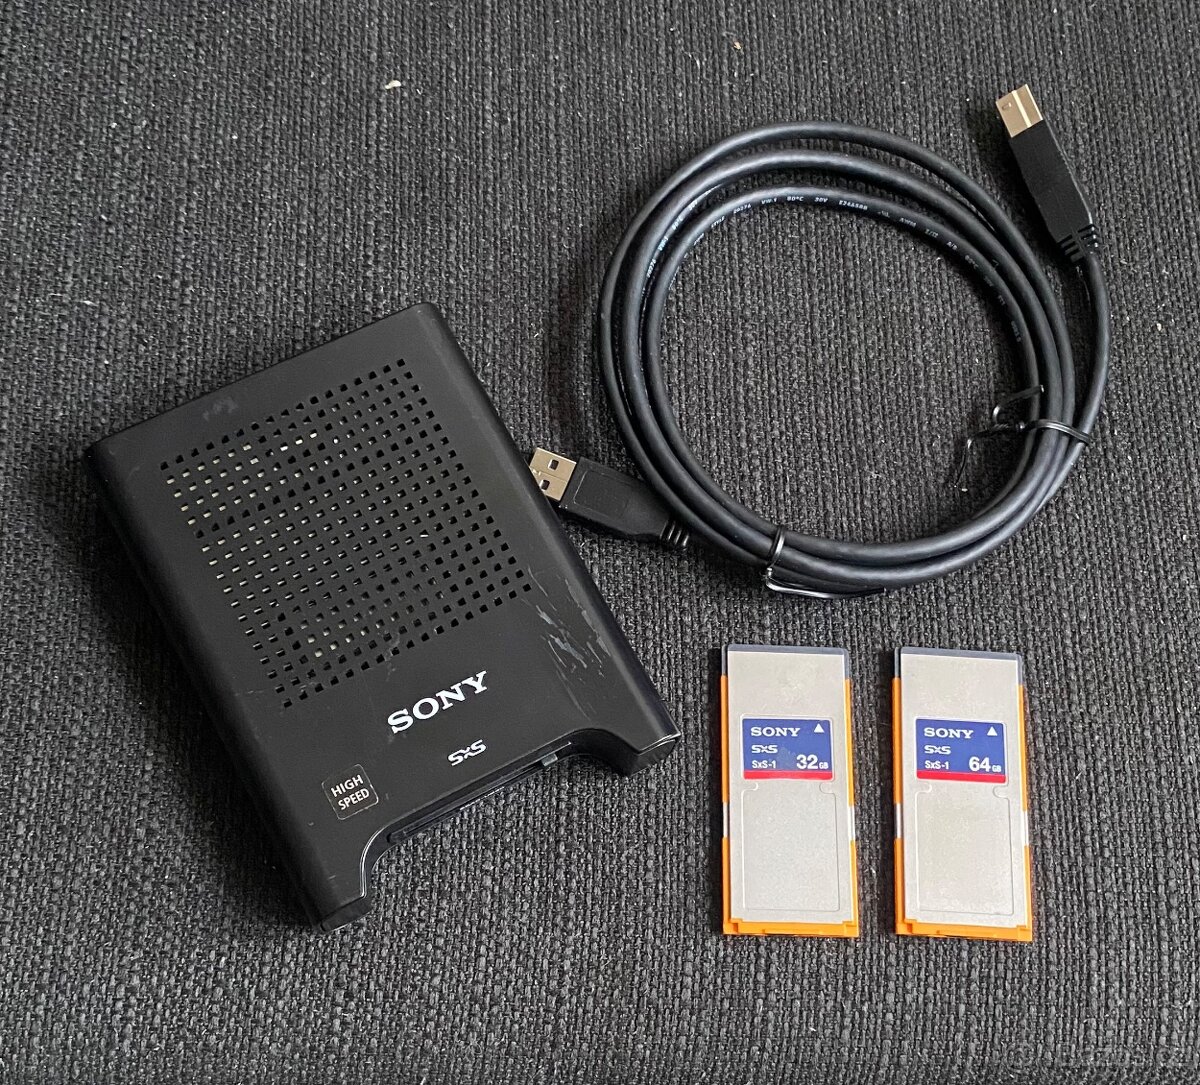 Sony SxS karty (64gb a 32gb) + čtečka těchto karet